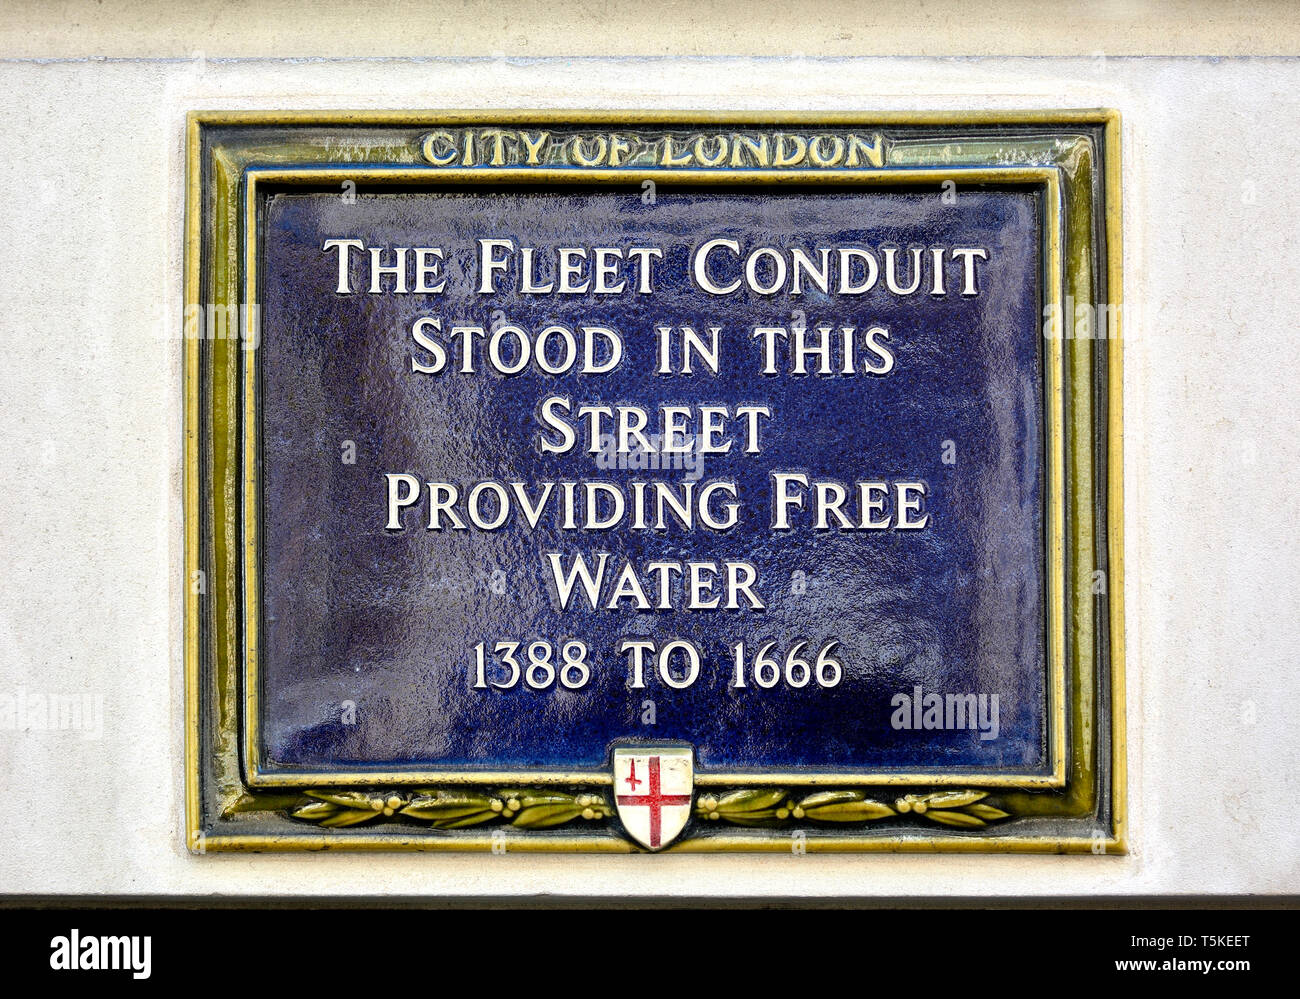 London, England, UK. Blaue Plakette bei 81 Fleet Street: Die Flotte Conduit in dieser Straße stand mit kostenlosem Wasser 1388 bis 1666 Stockfoto